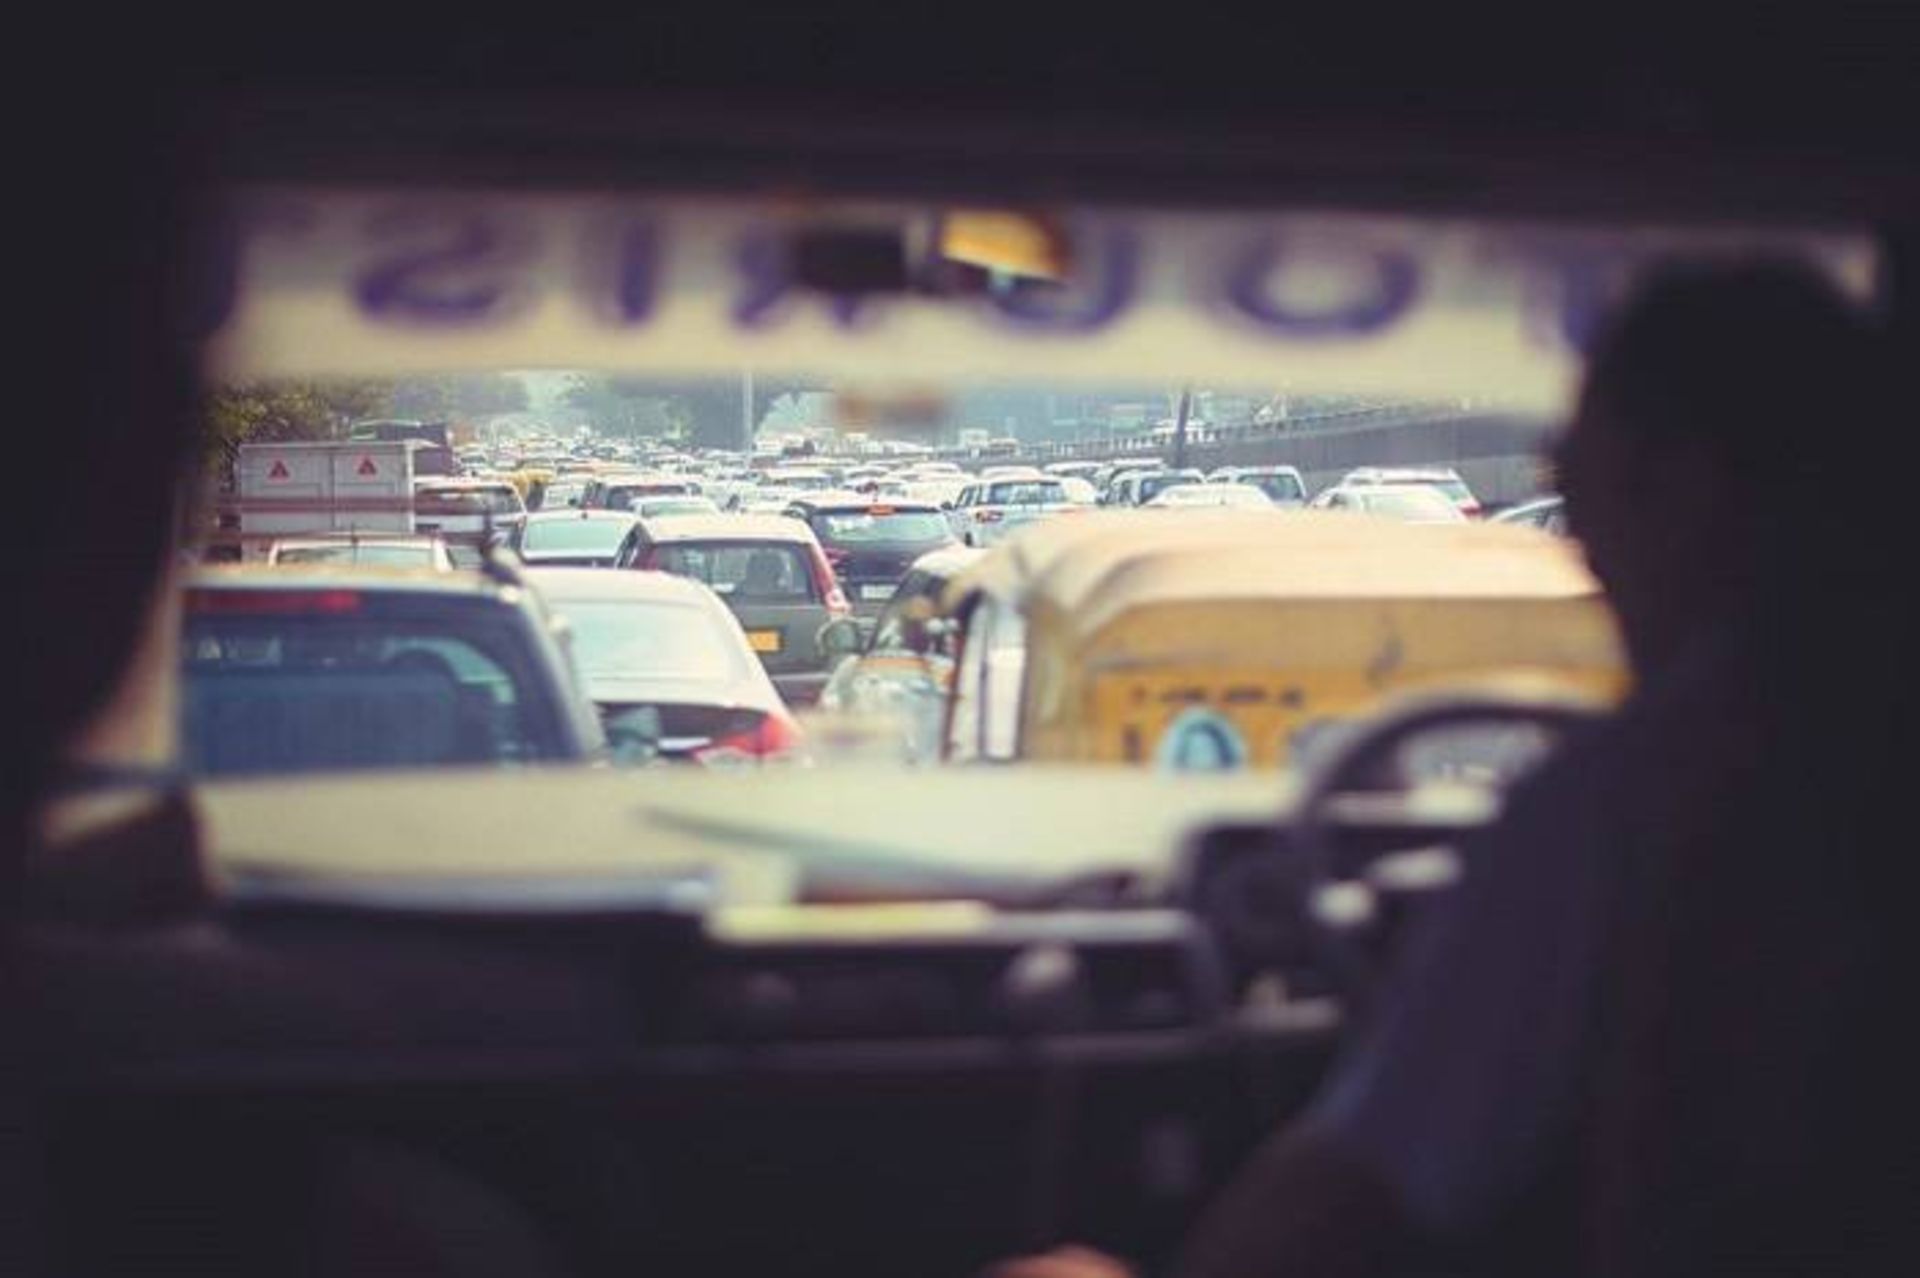 ترافیک در دهلی نو هند / traffic